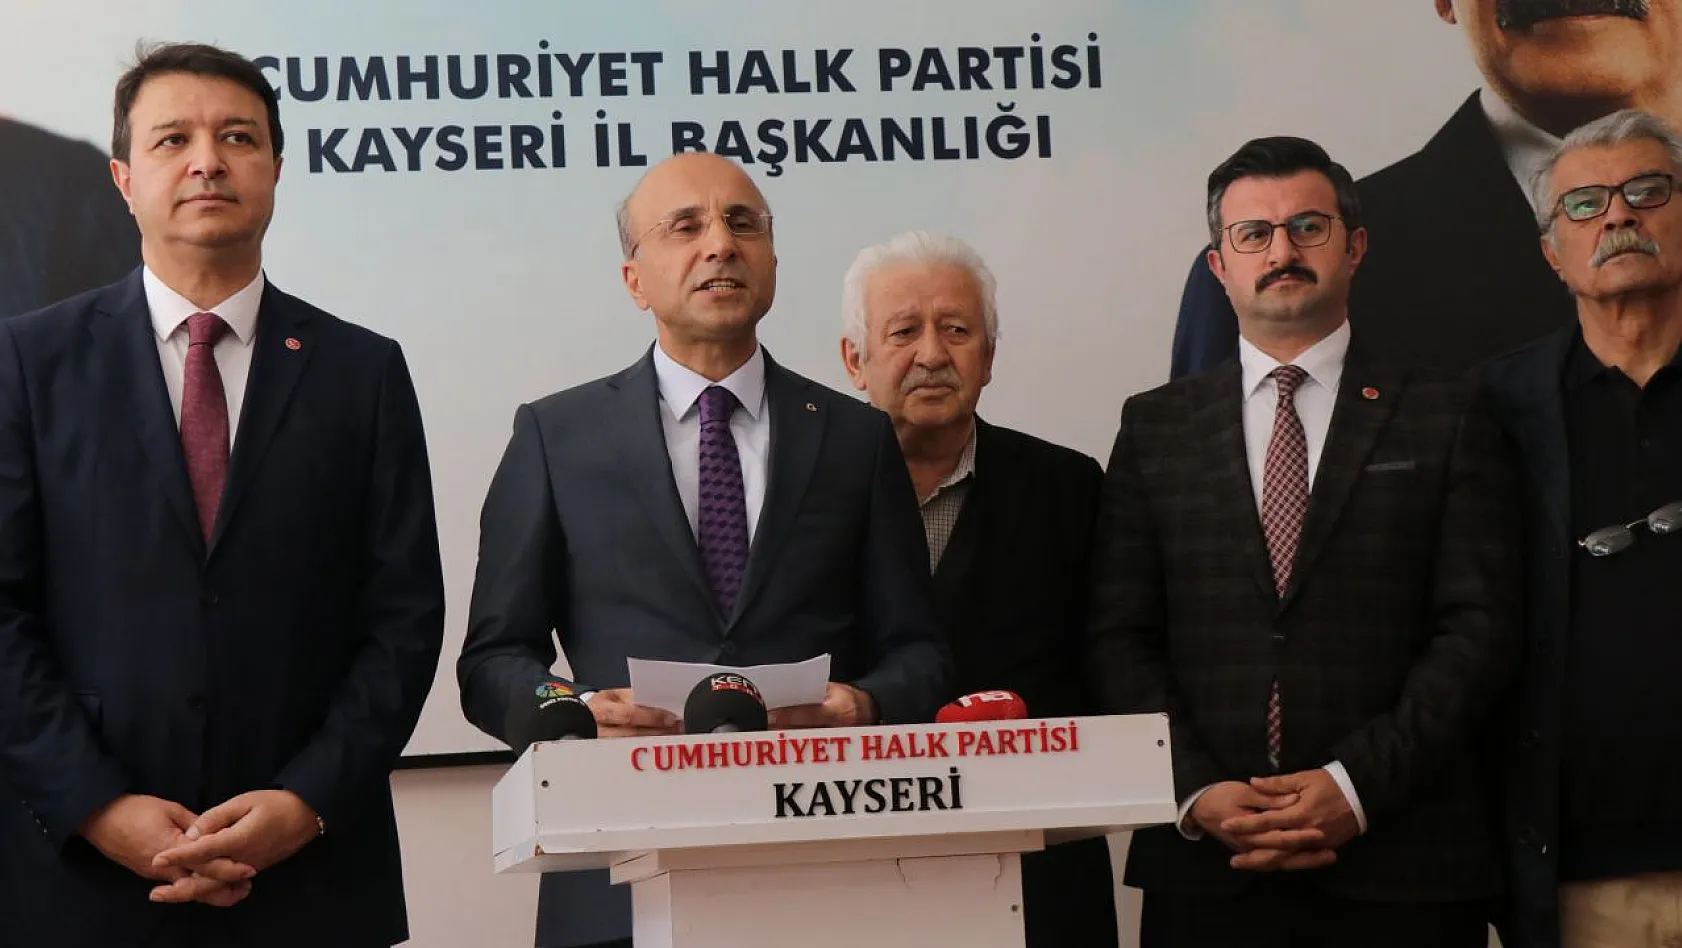 '1977'den beri Kayseri'de bir ilk'